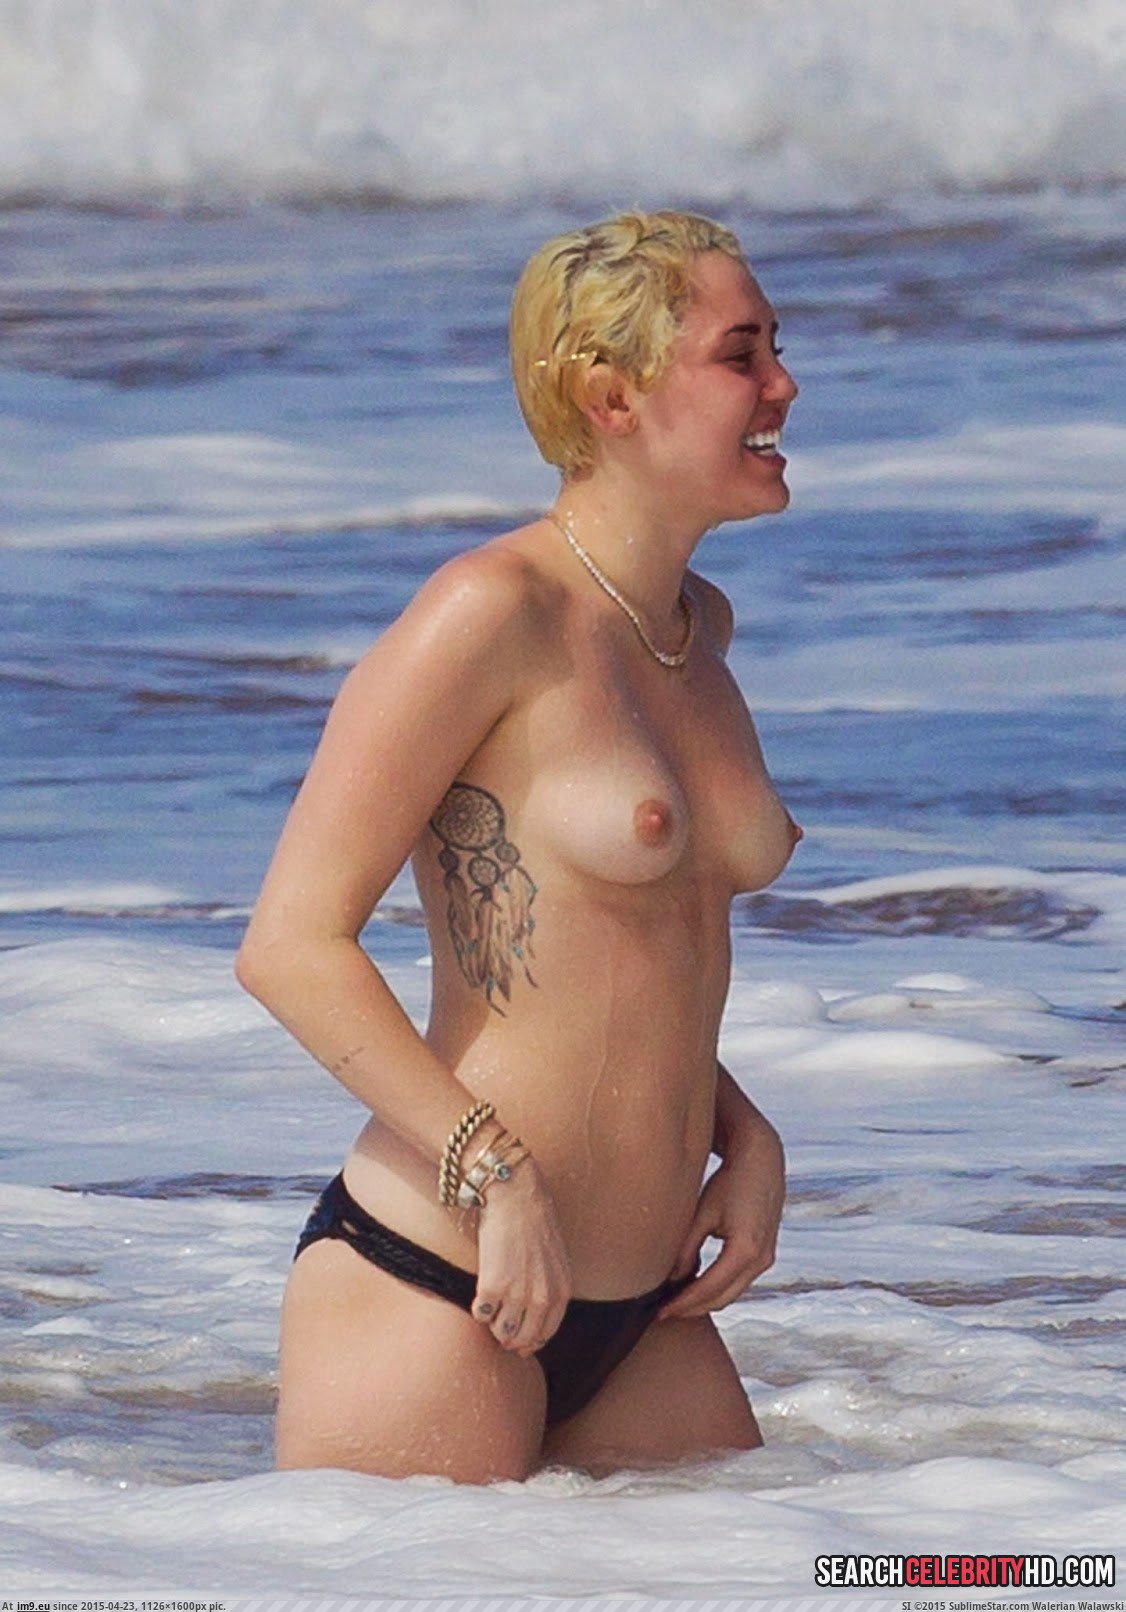 Miley Cyrus Topless Bikini Candid Photos In Hawaii (5) (in Miley Cyrus Topless Bikini Candid Photos In Hawaii)